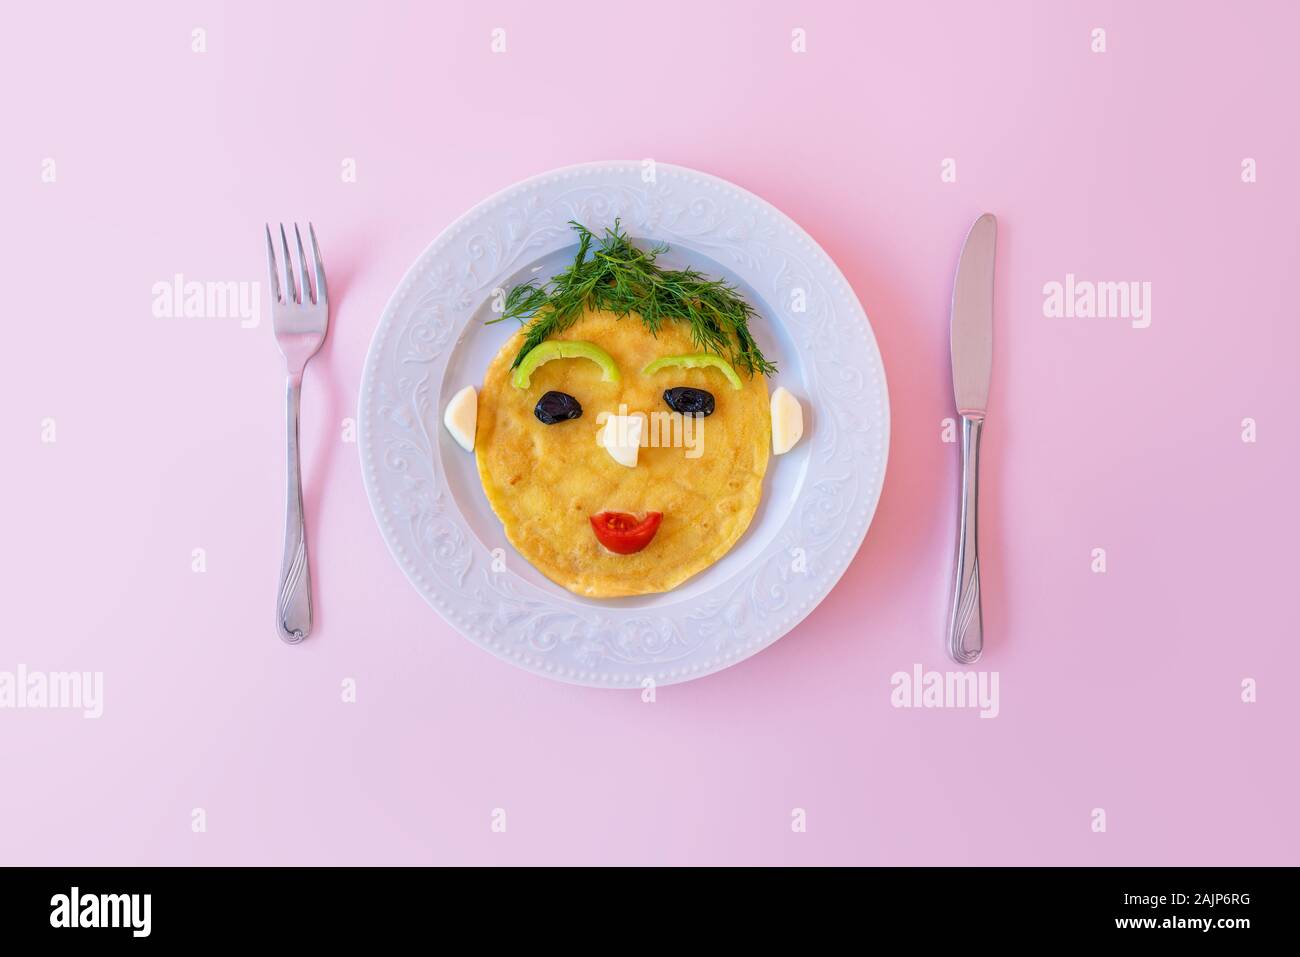 Funny préparé omelette avec la forme de visage humain pour les enfants. Banque D'Images